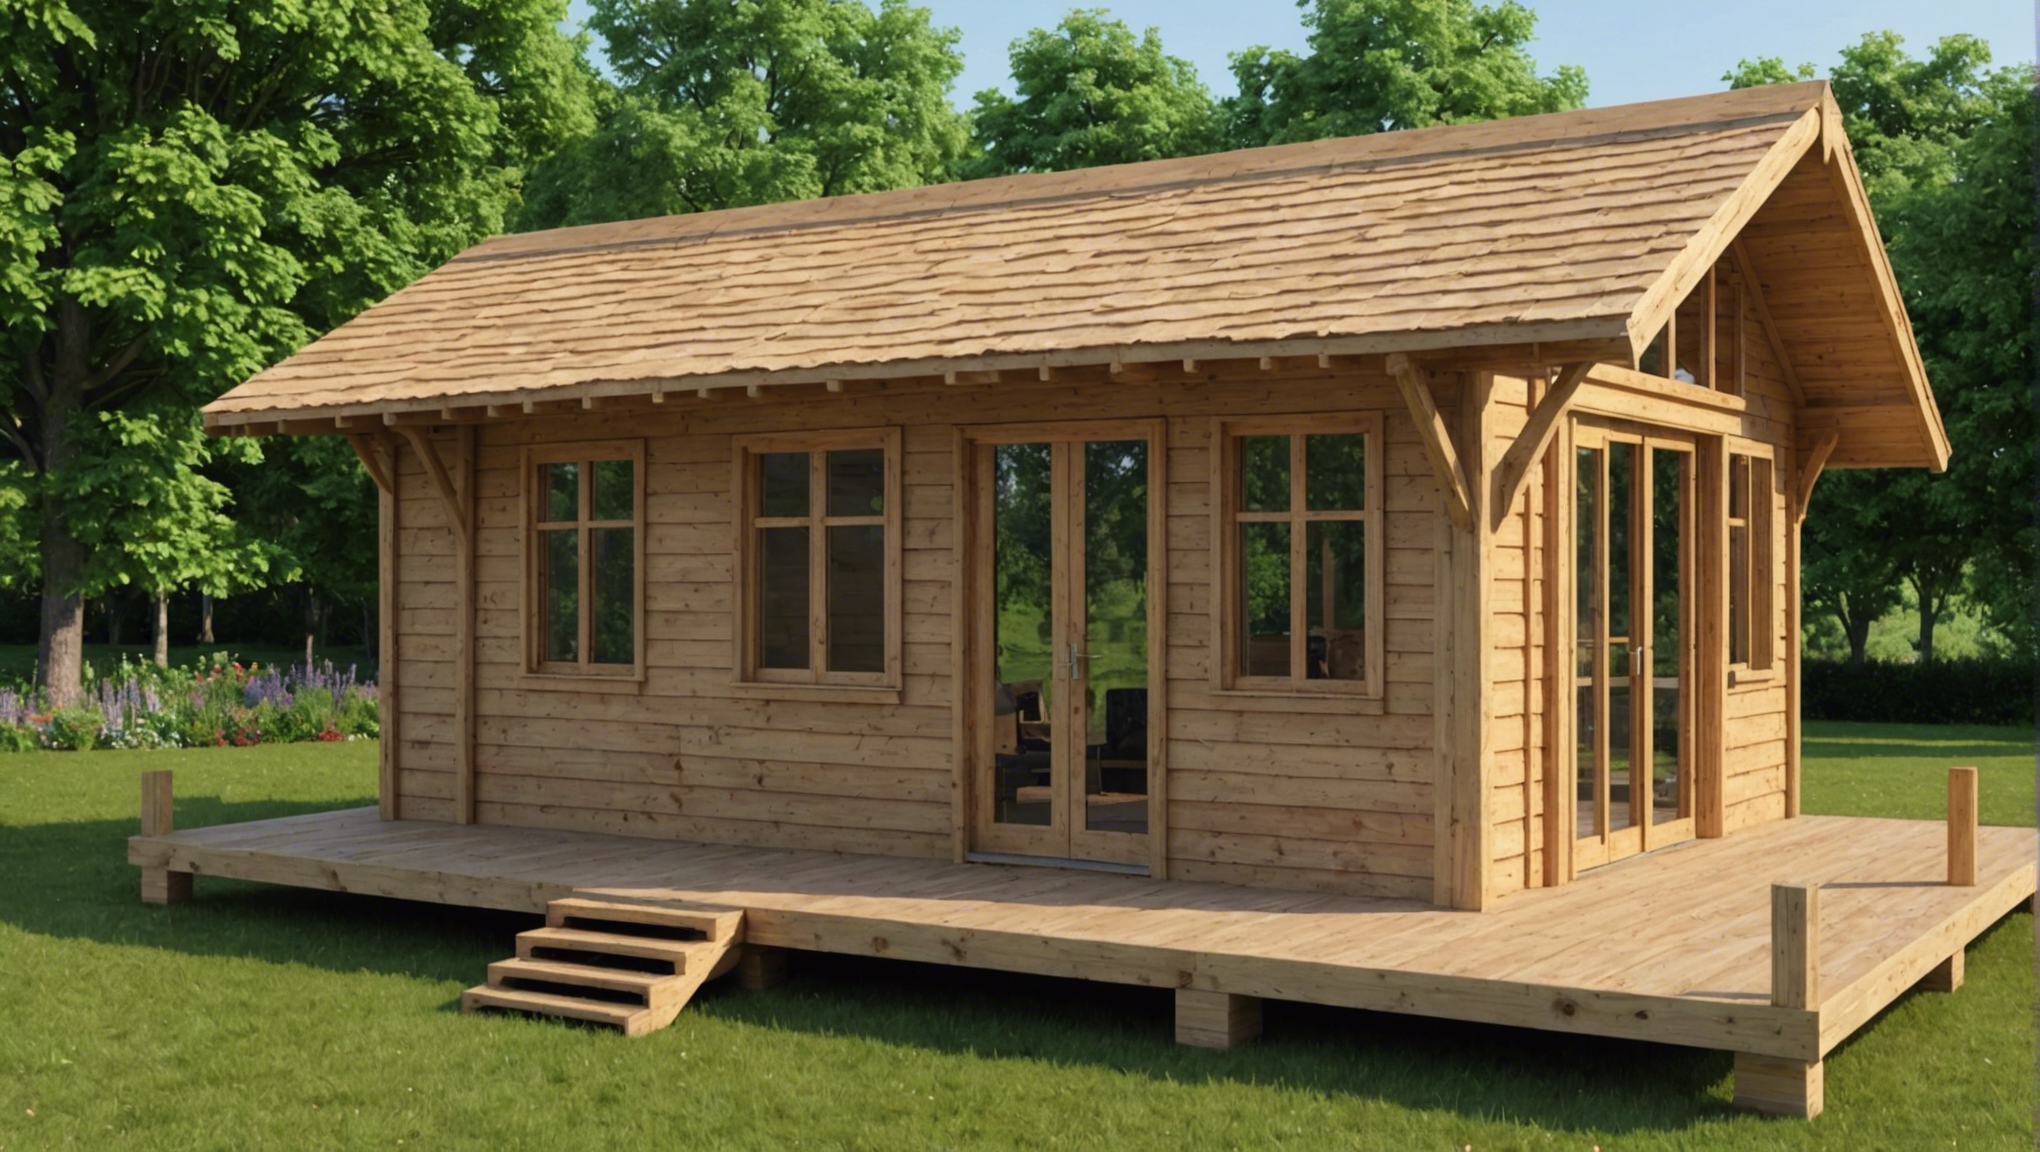 découvrez les avantages de choisir la construction d'une maison en bois et les raisons qui en font une option écologique et durable.